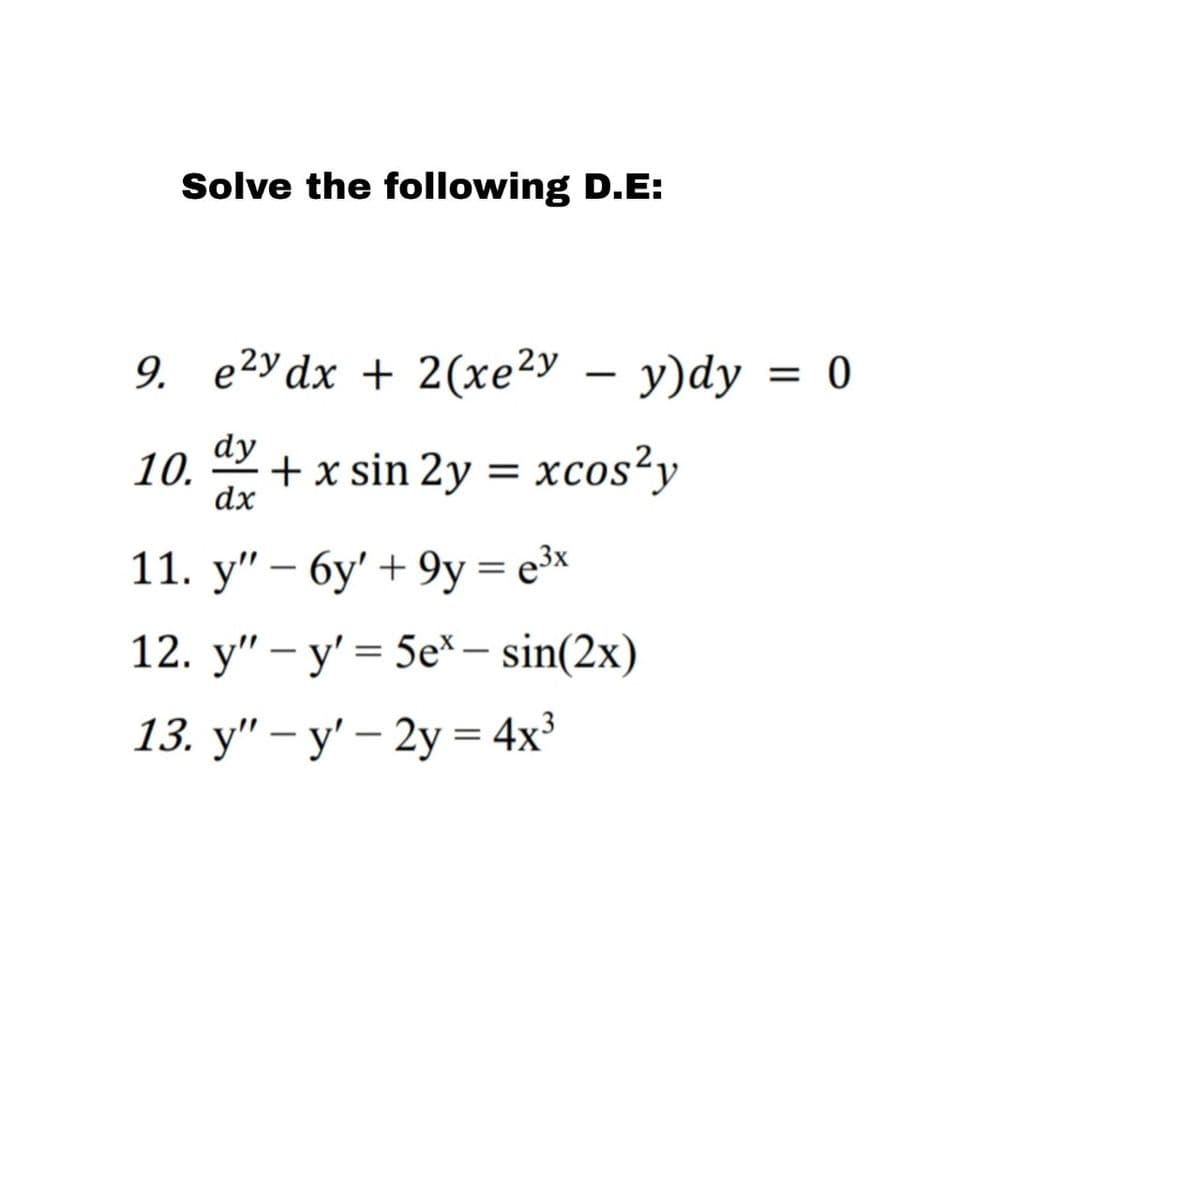 Solve the following D.E:
9. e²y dx+2(xe²y - y)dy = 0
10. dy + x sin 2y = xcos²y
dx
11. y" - 6y' + 9y= e³x
=
12. y" y' 5ex - sin(2x)
13. y" - y' - 2y = 4x³